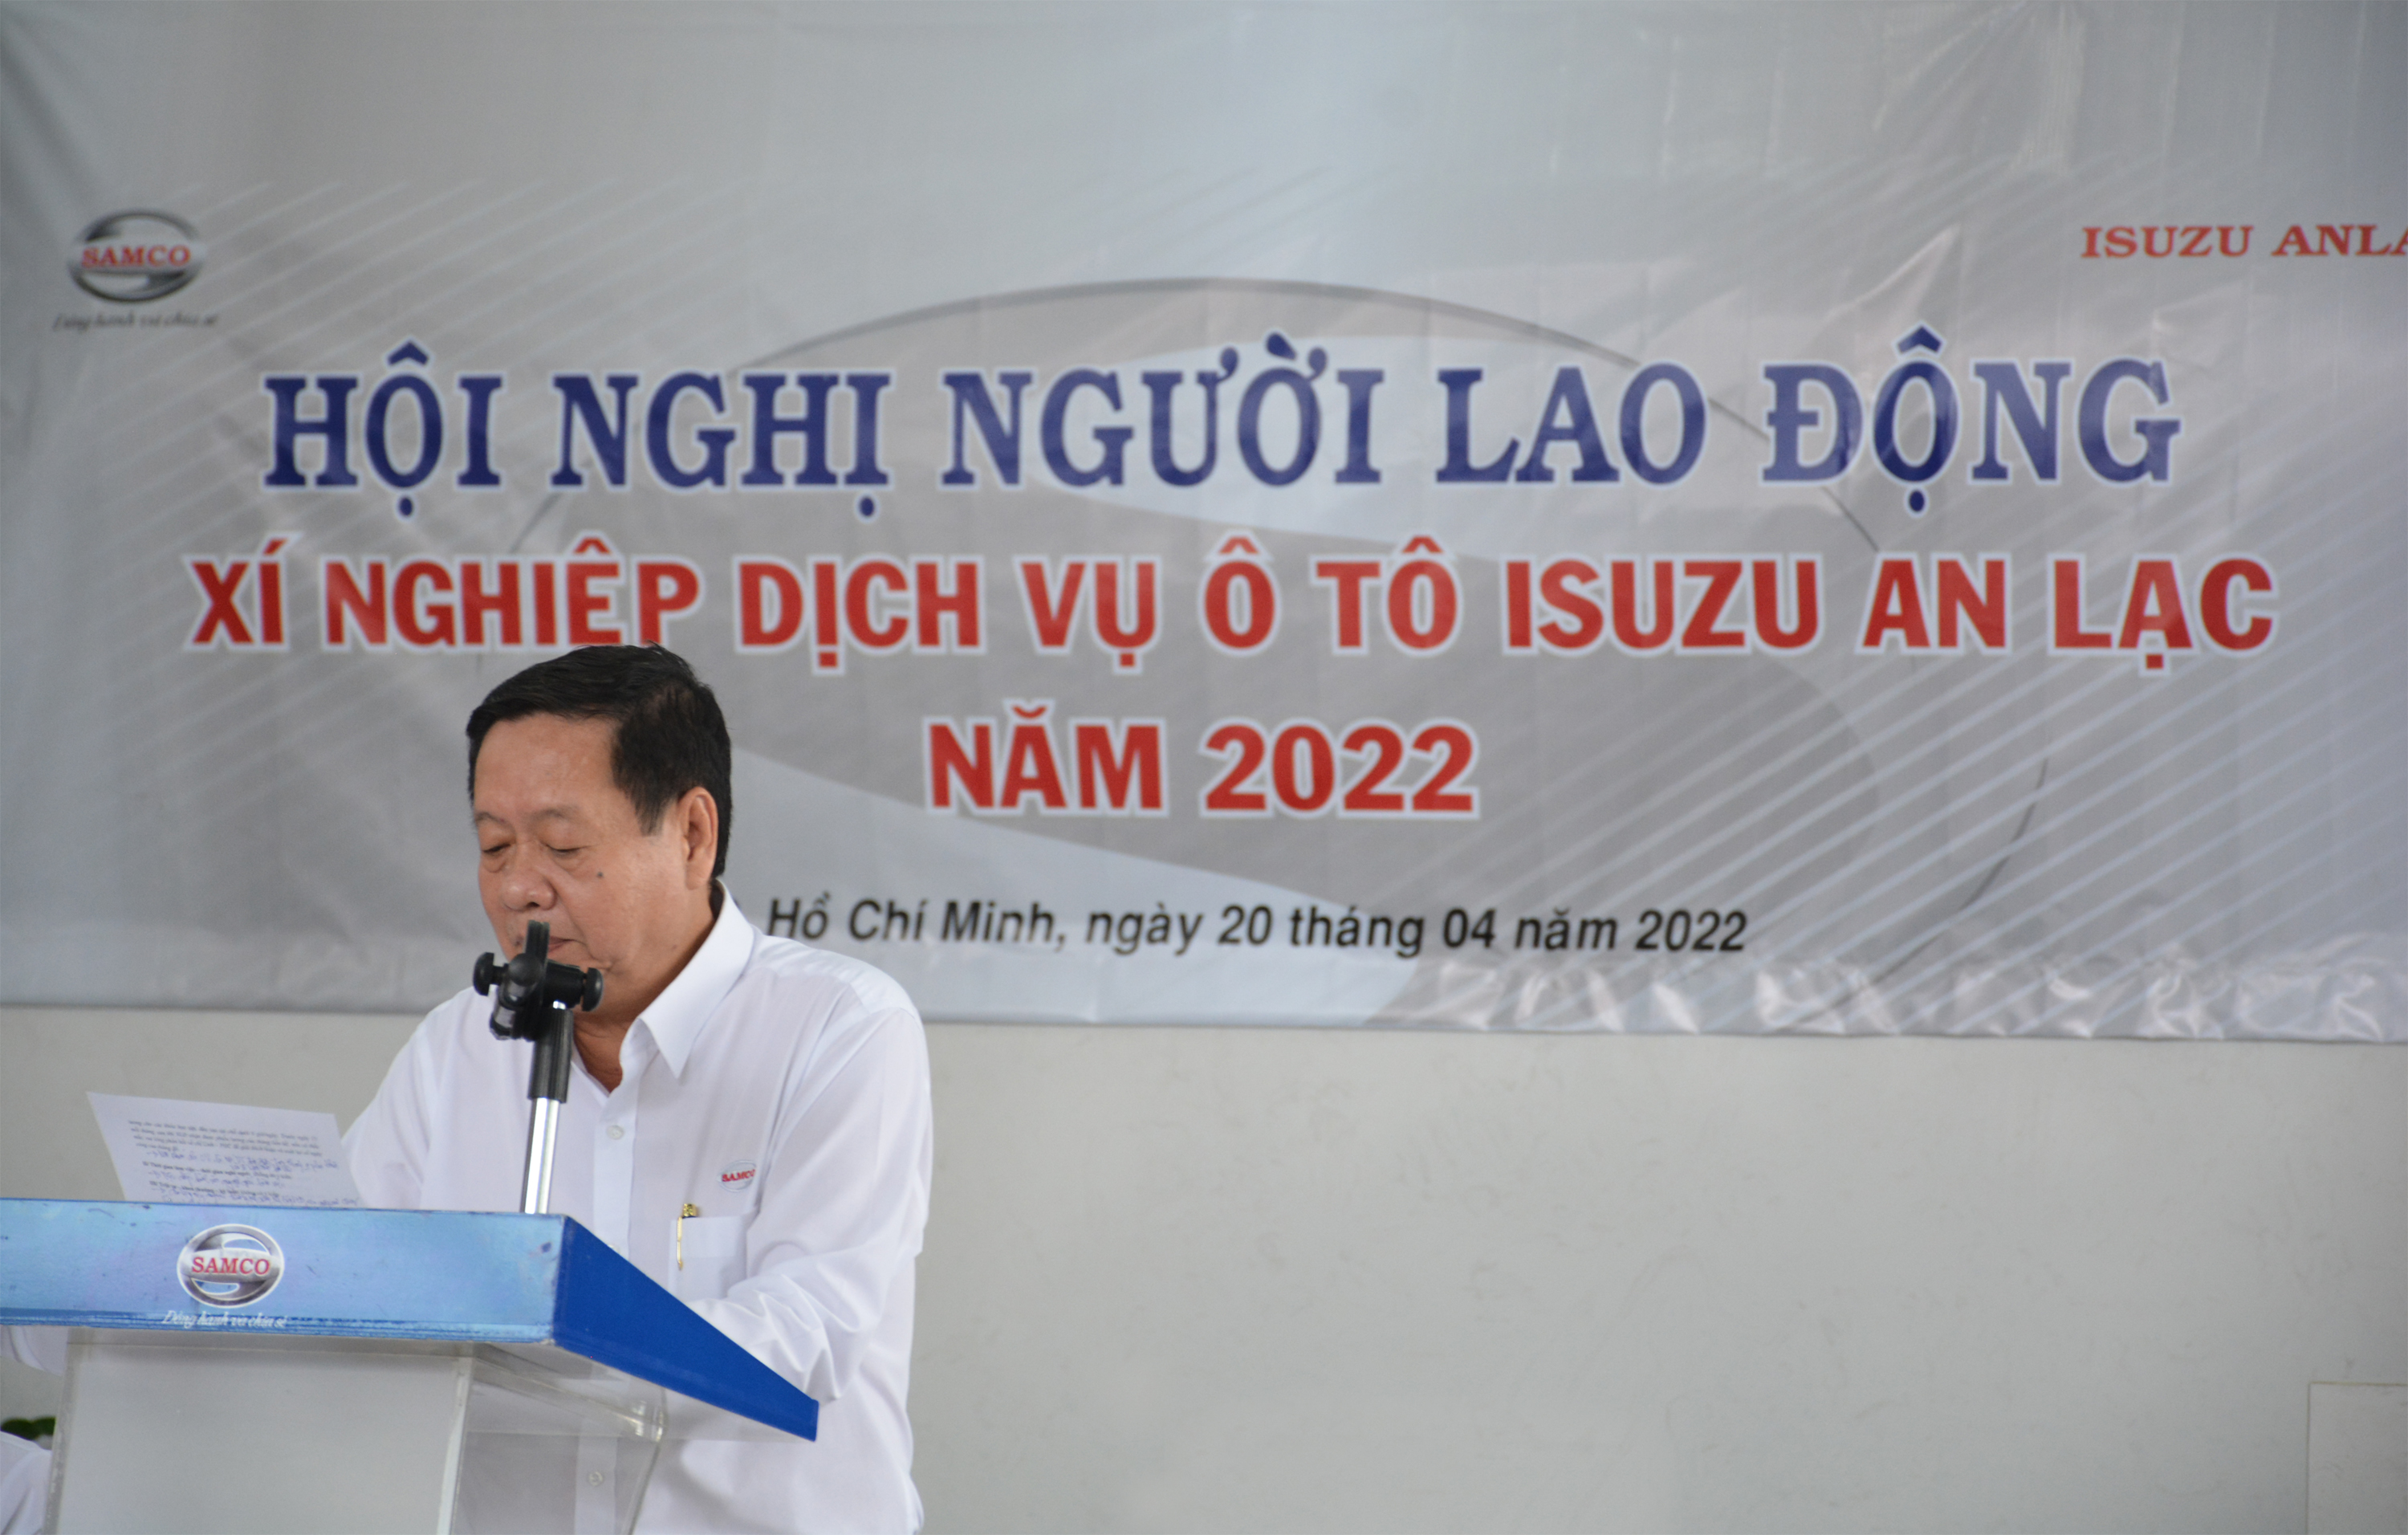 isuzu an lac to chuc hoi nghi nguoi lao dong 2022